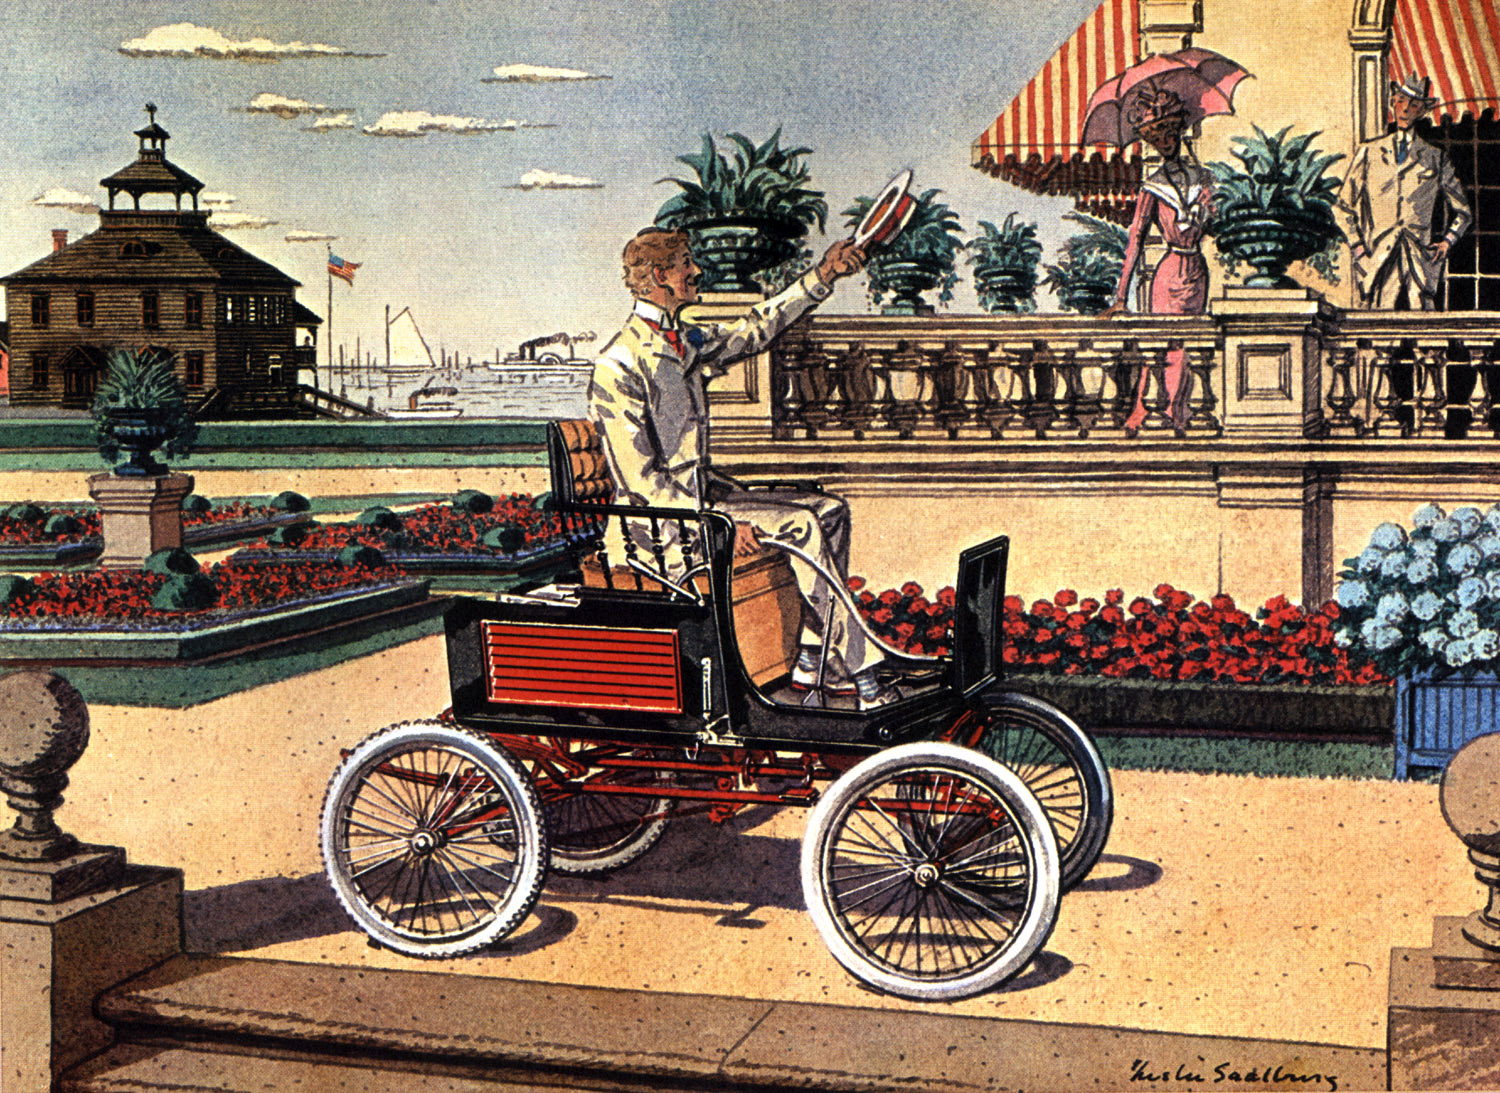 1899 Locomobile - Illustrated by Leslie Saalburg